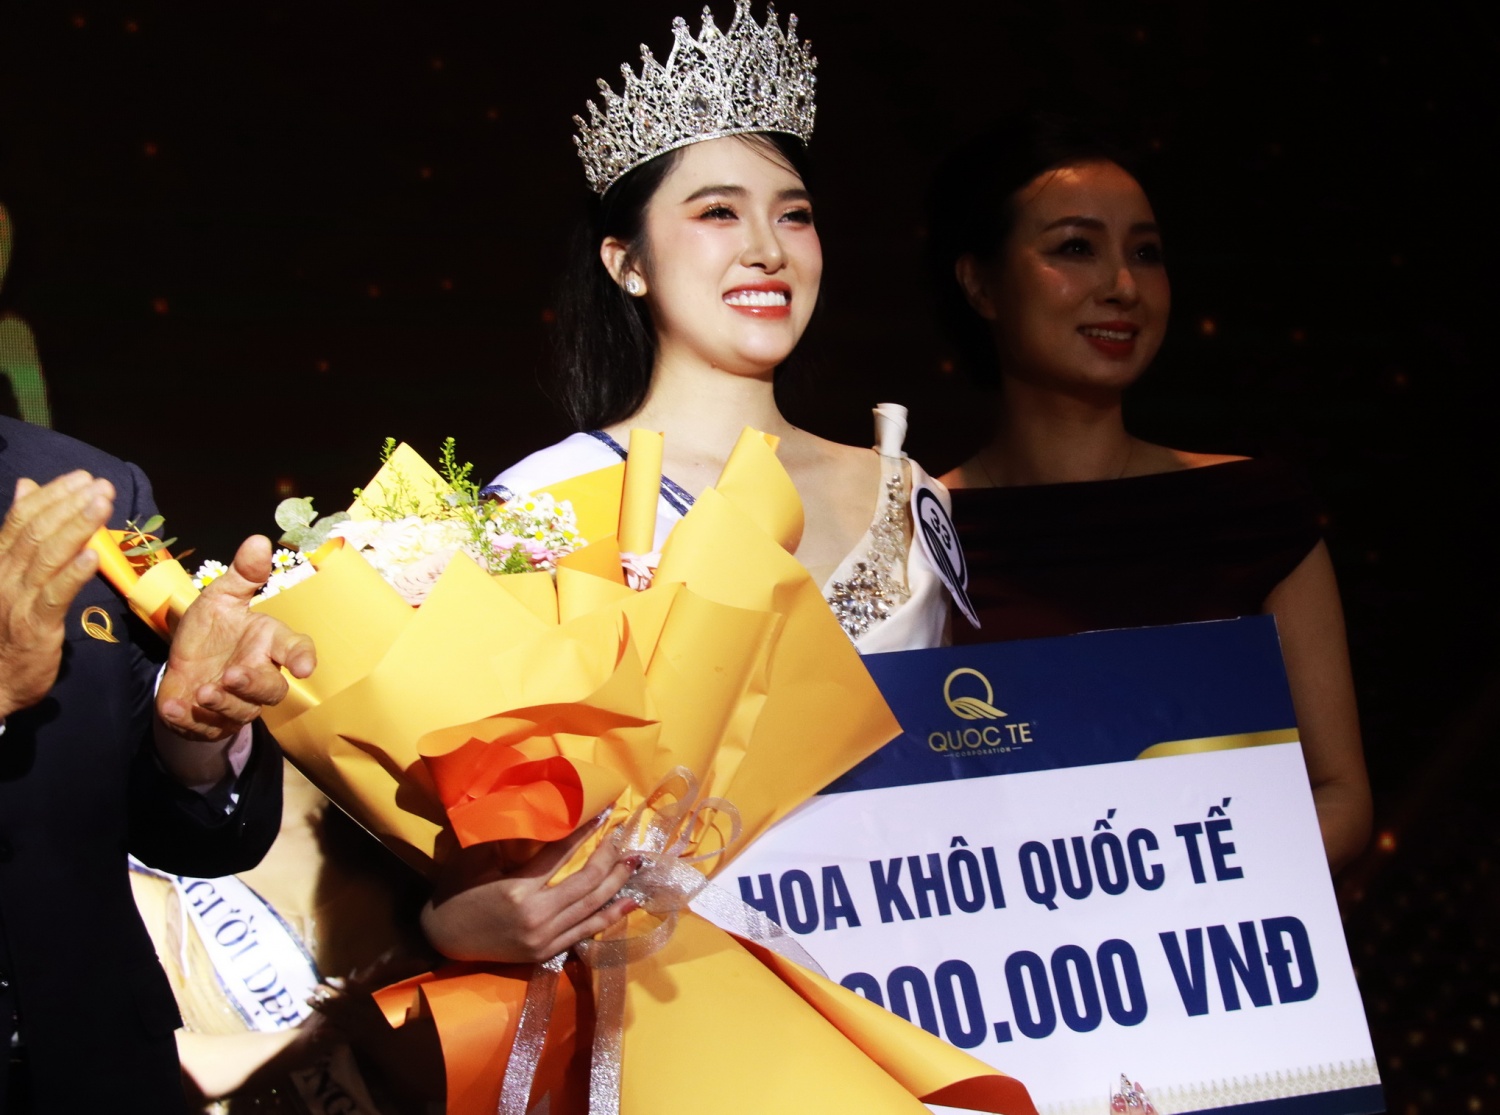 Tổng Công ty quốc tế Nha Trang tổ chức thi Hoa khôi cho các nữ nhân viên